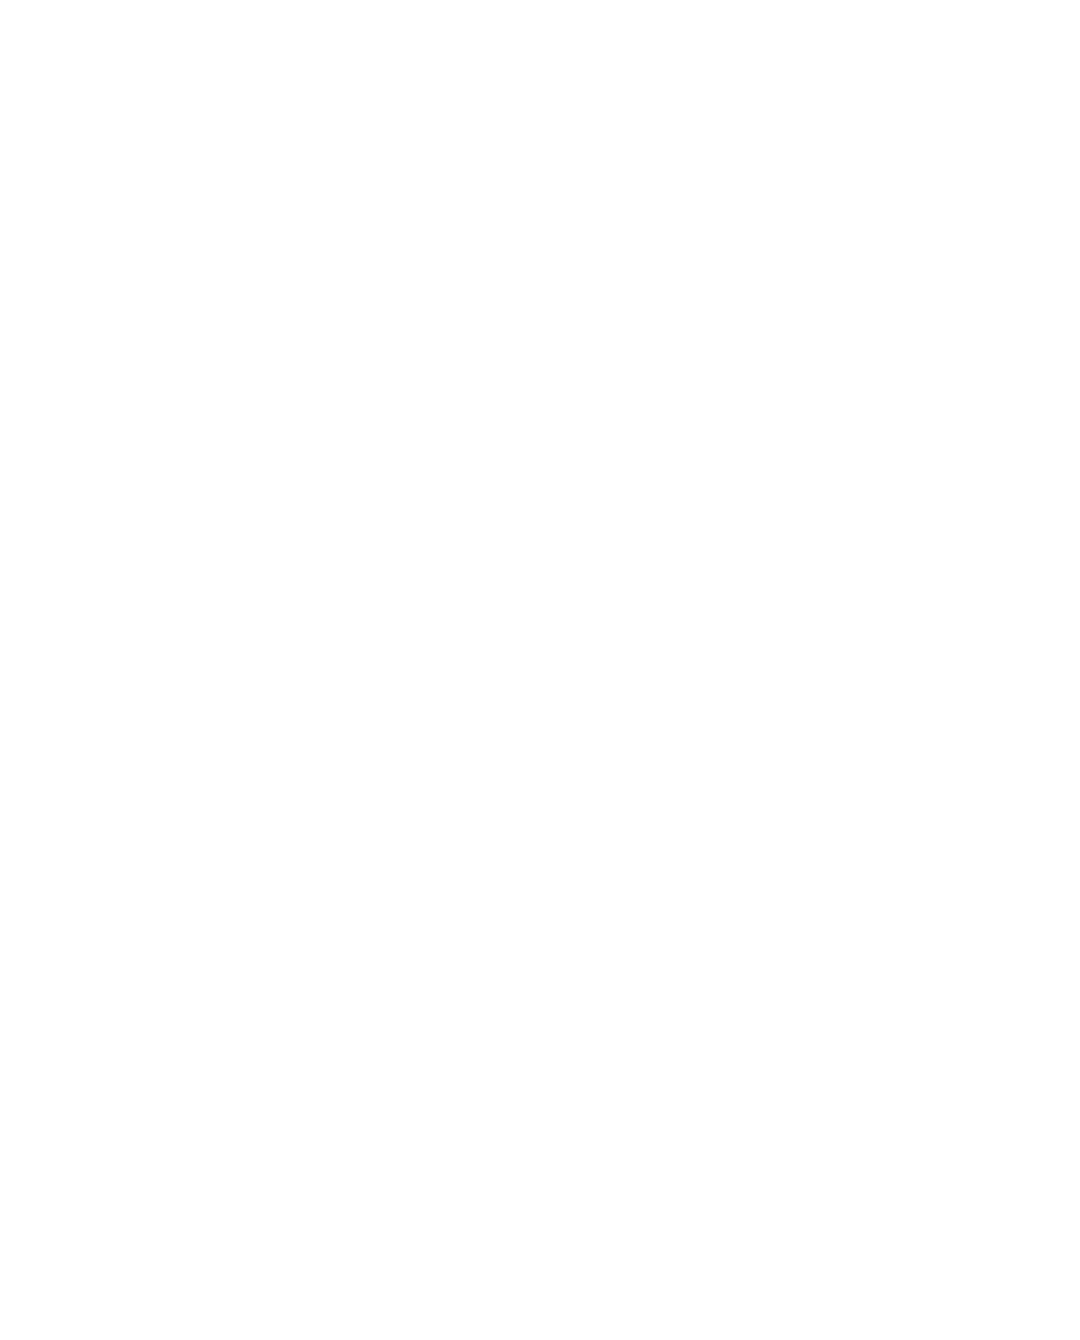 ANNA WILDER BURNS